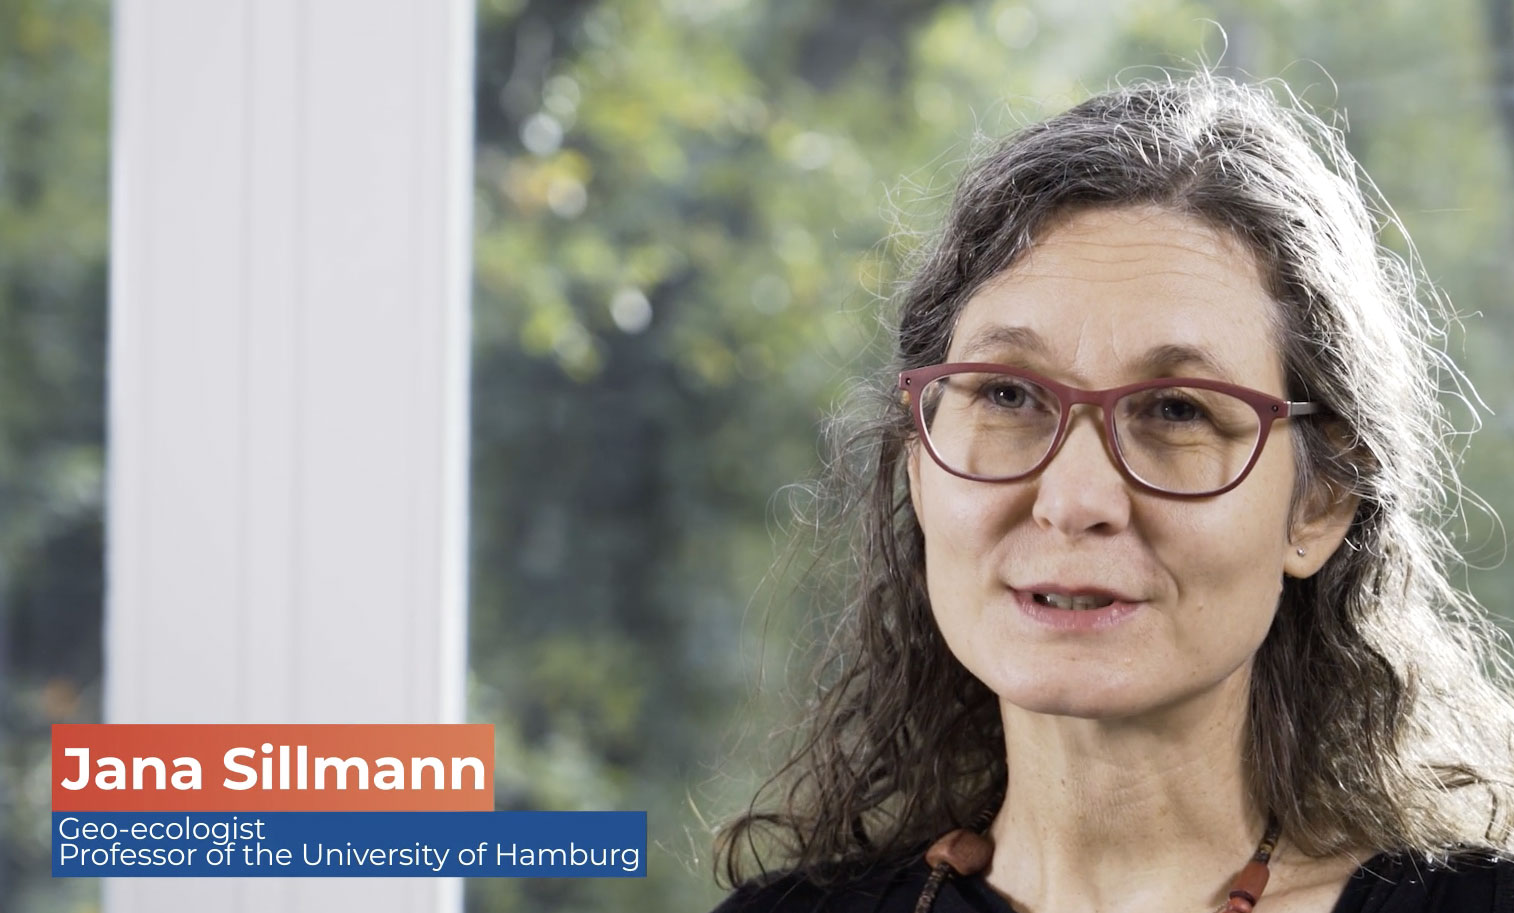 Interview with Jana Sillmann, RECEIPT researcher